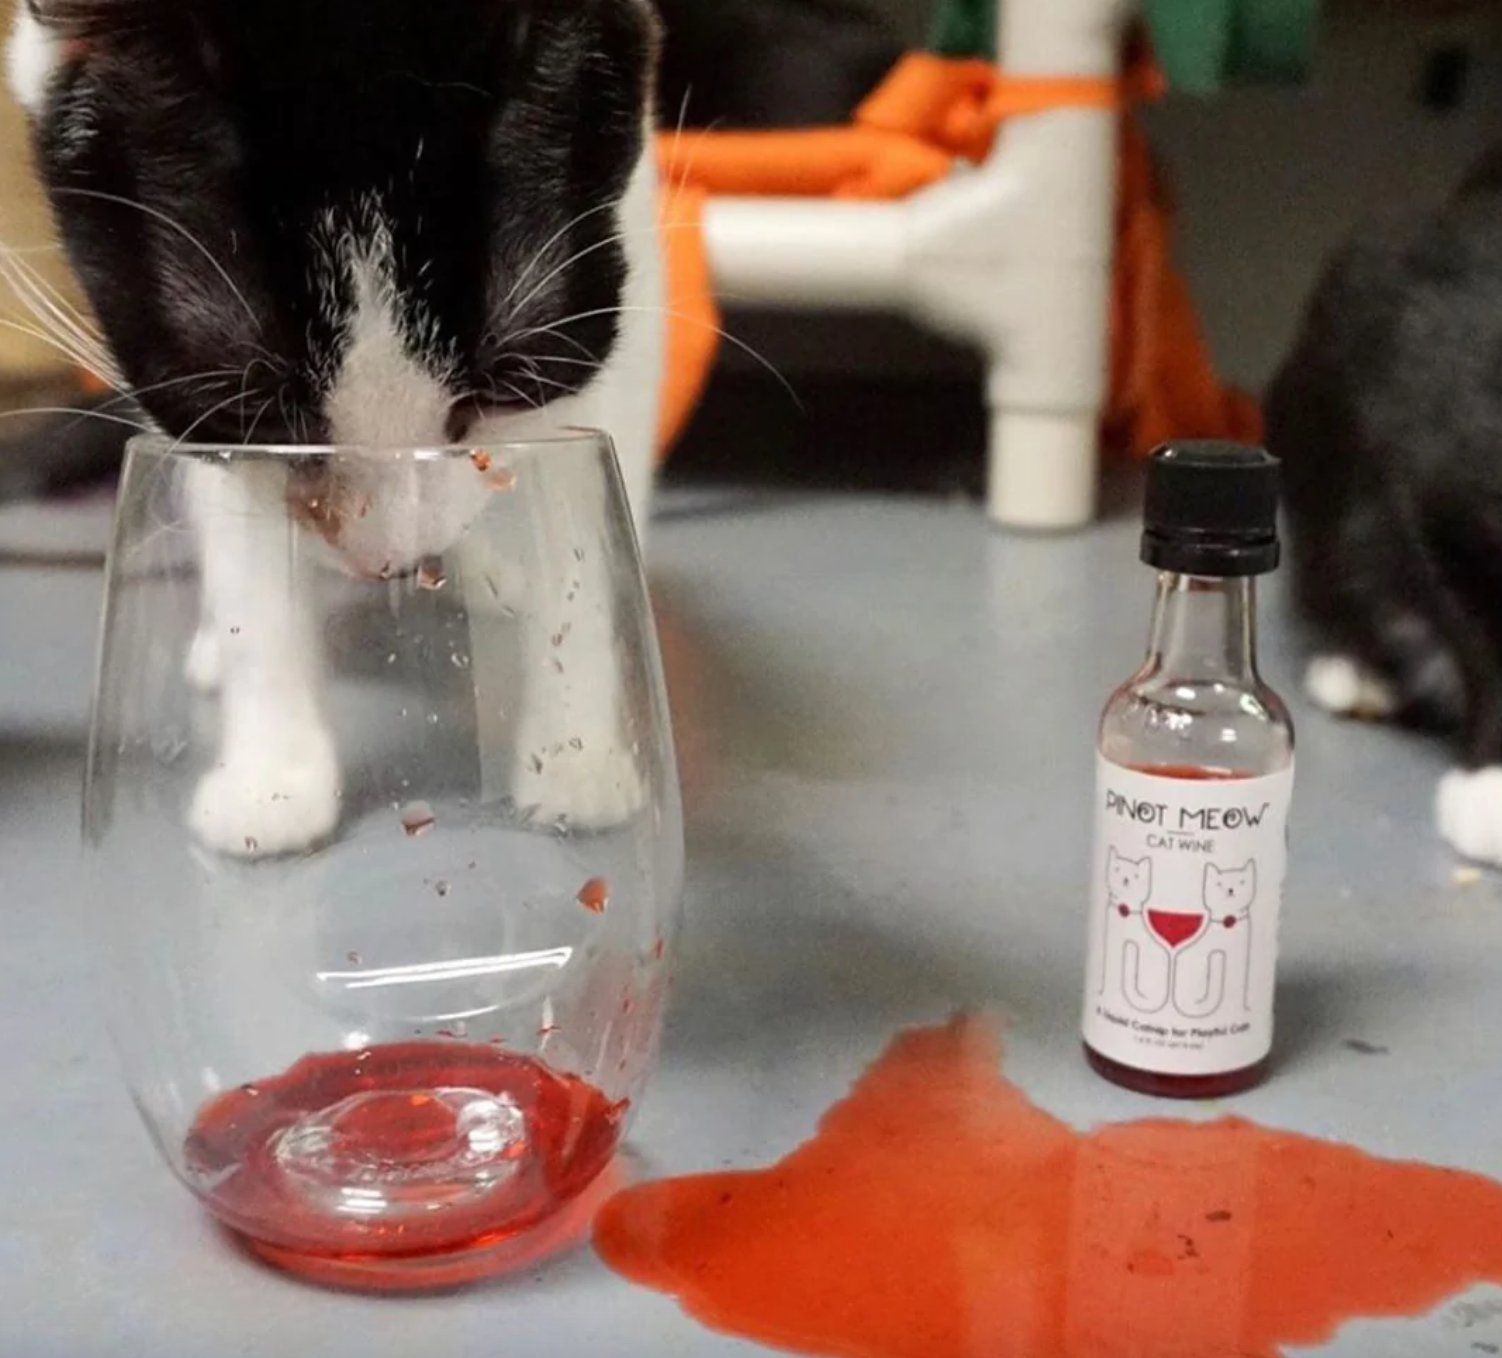 Pinot Meow Cat Wine - 50ml